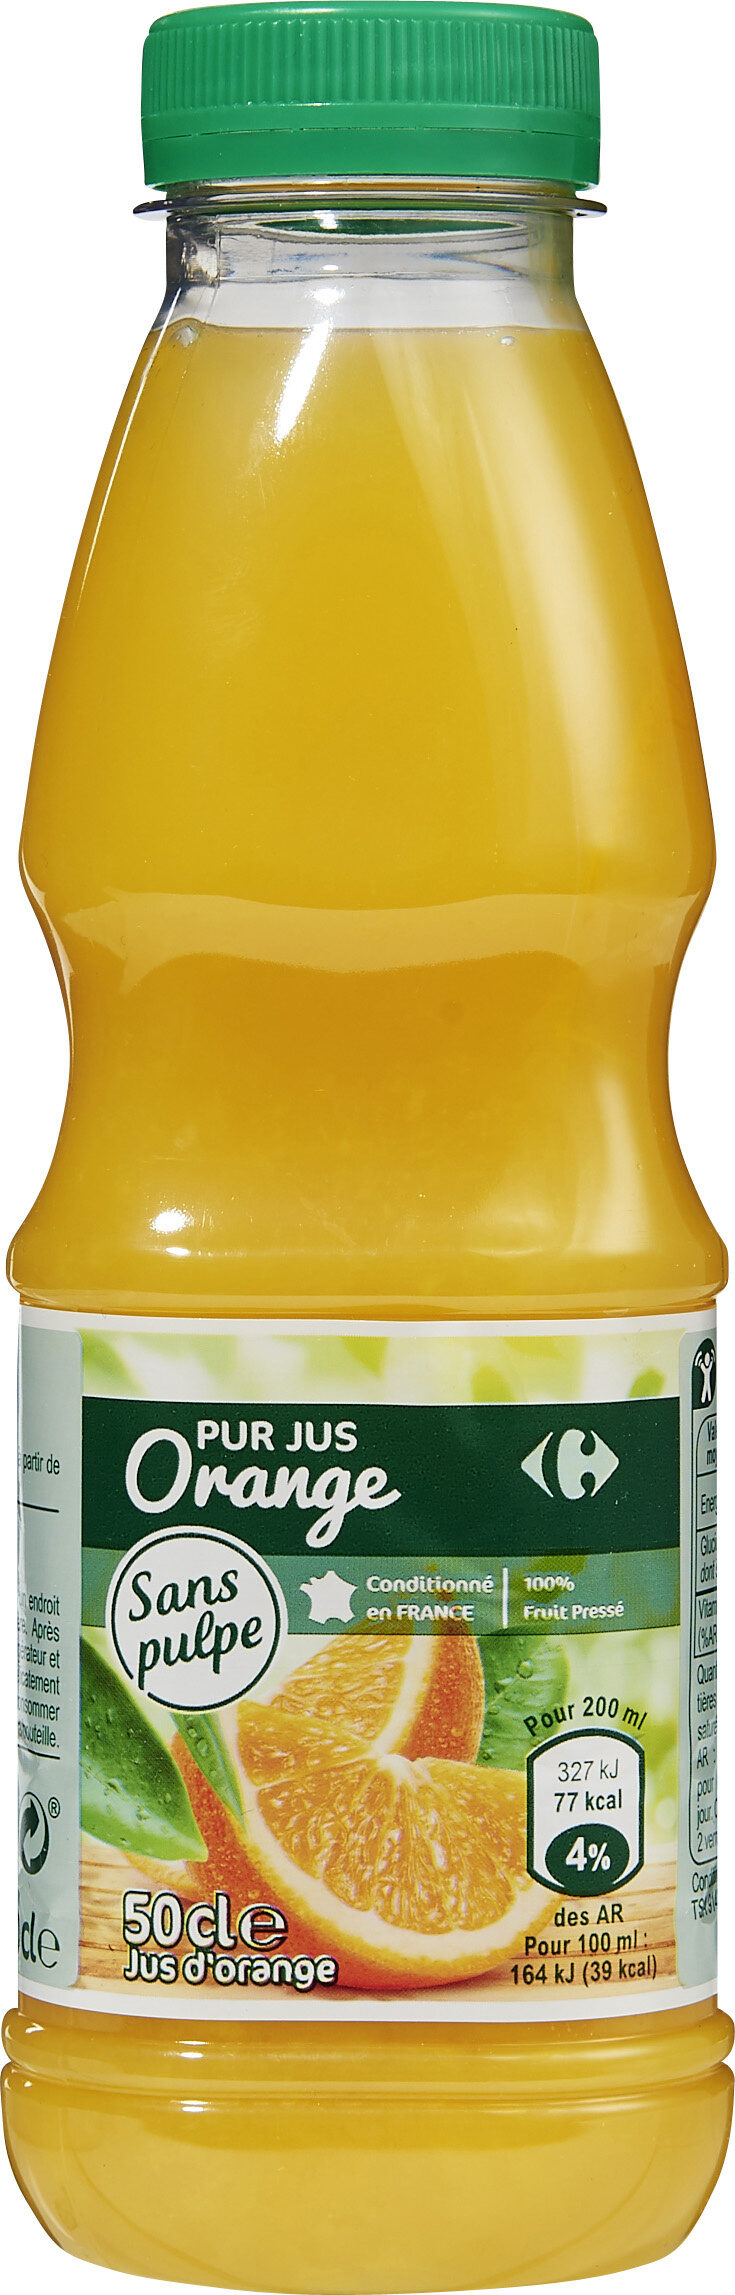 100% pur jus jus d'orange sans pulpe - Produit